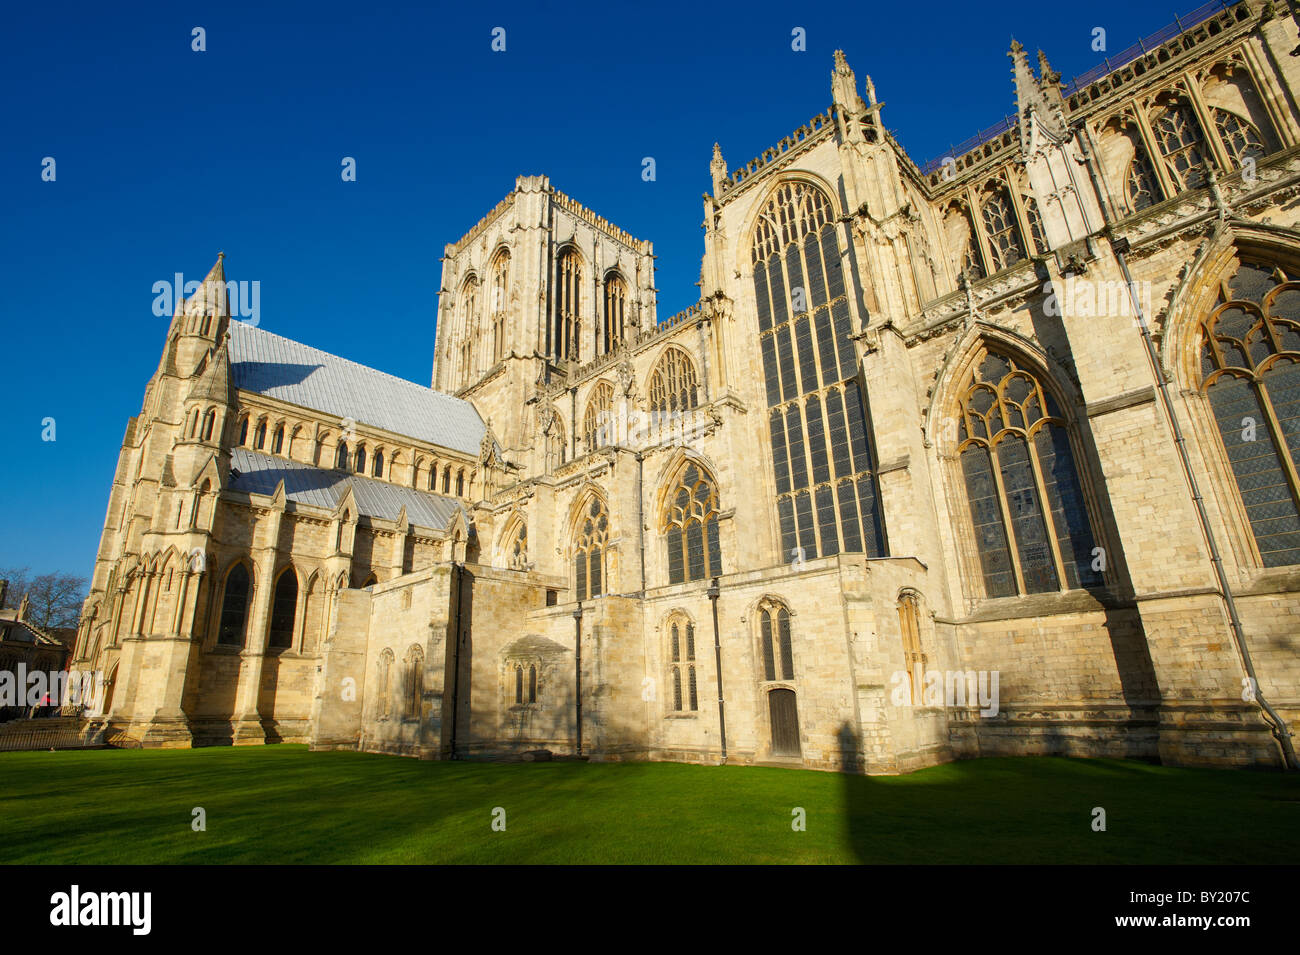 L'architecture gothique à l'extérieur de la cathédrale et l'église de Saint Pierre Metropolitical à York, communément connu sous le nom de York Minster. Banque D'Images